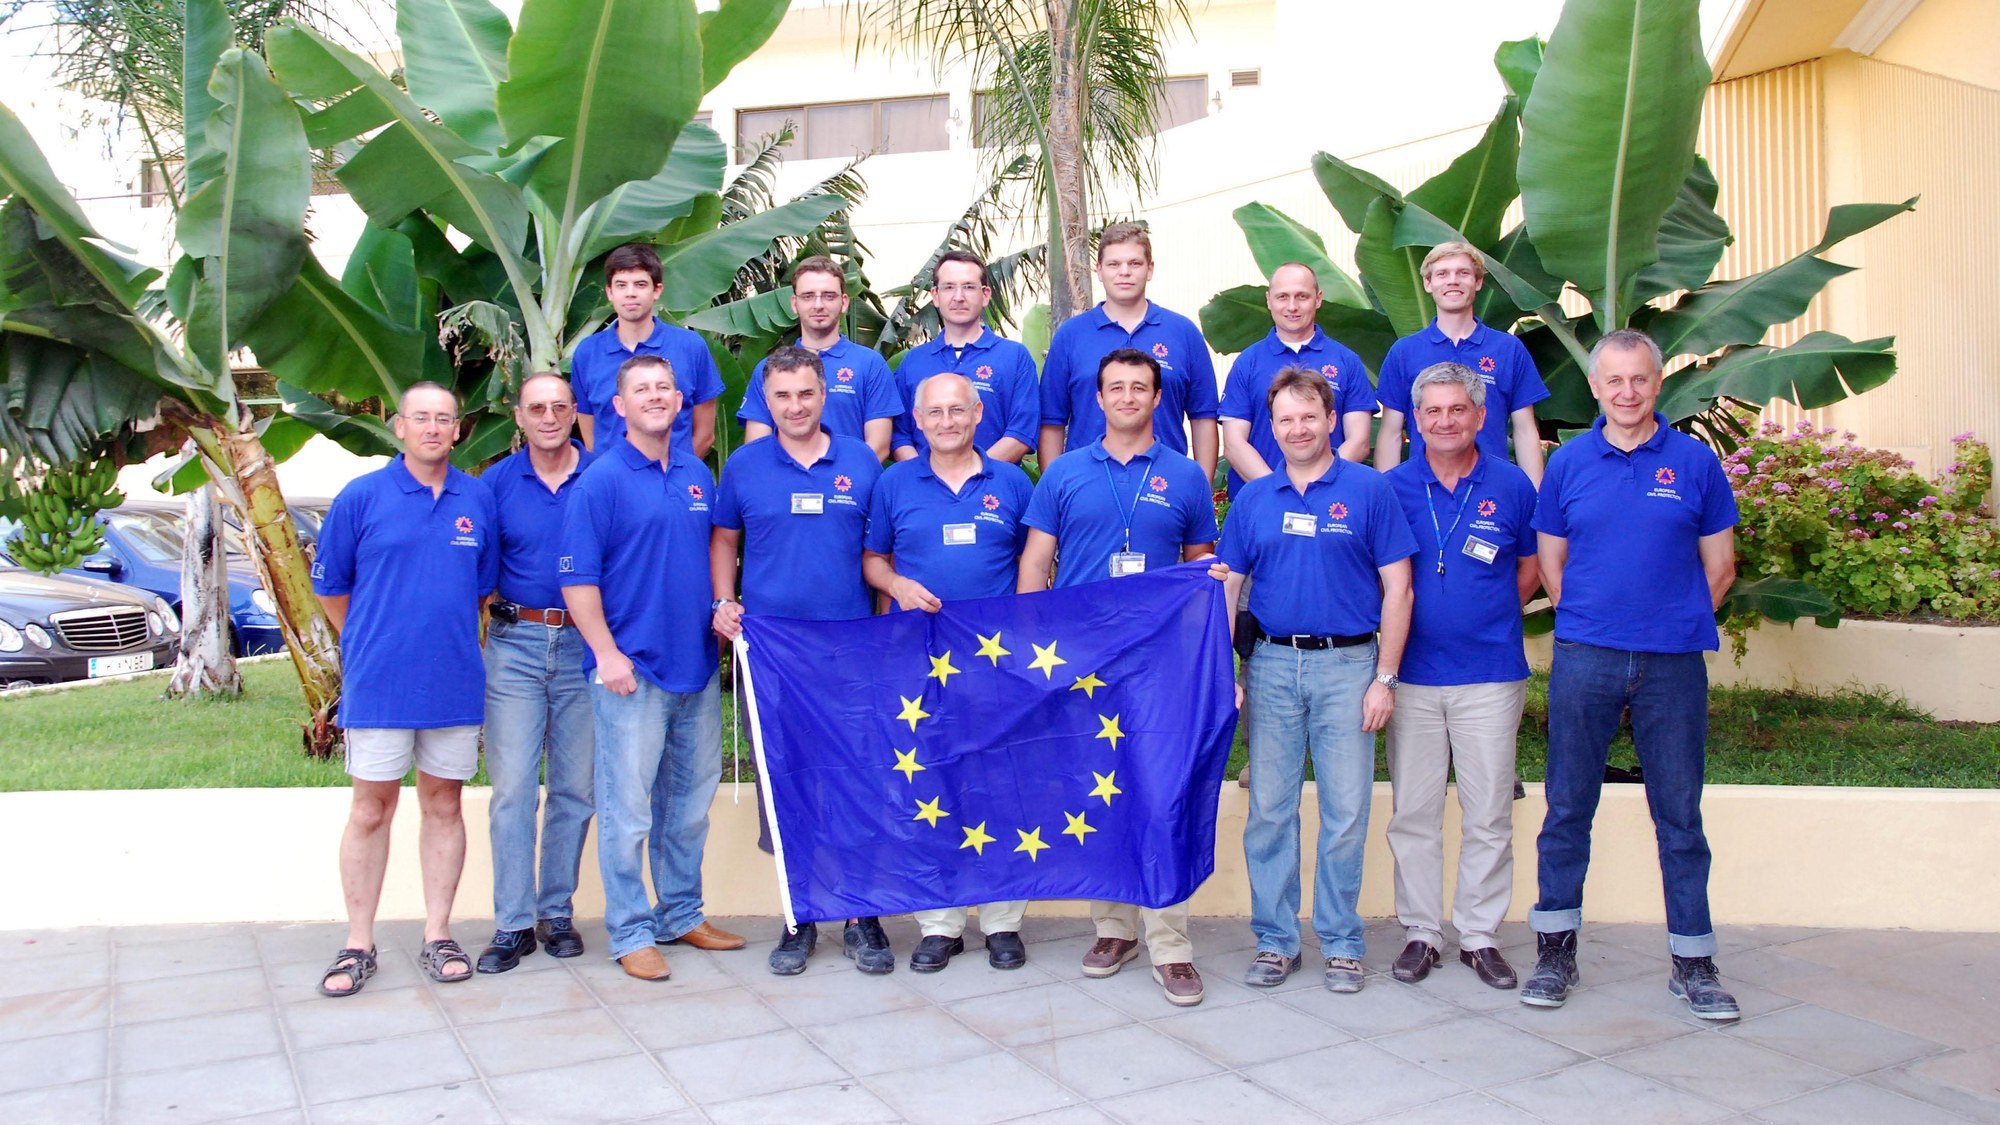 The EUCP team